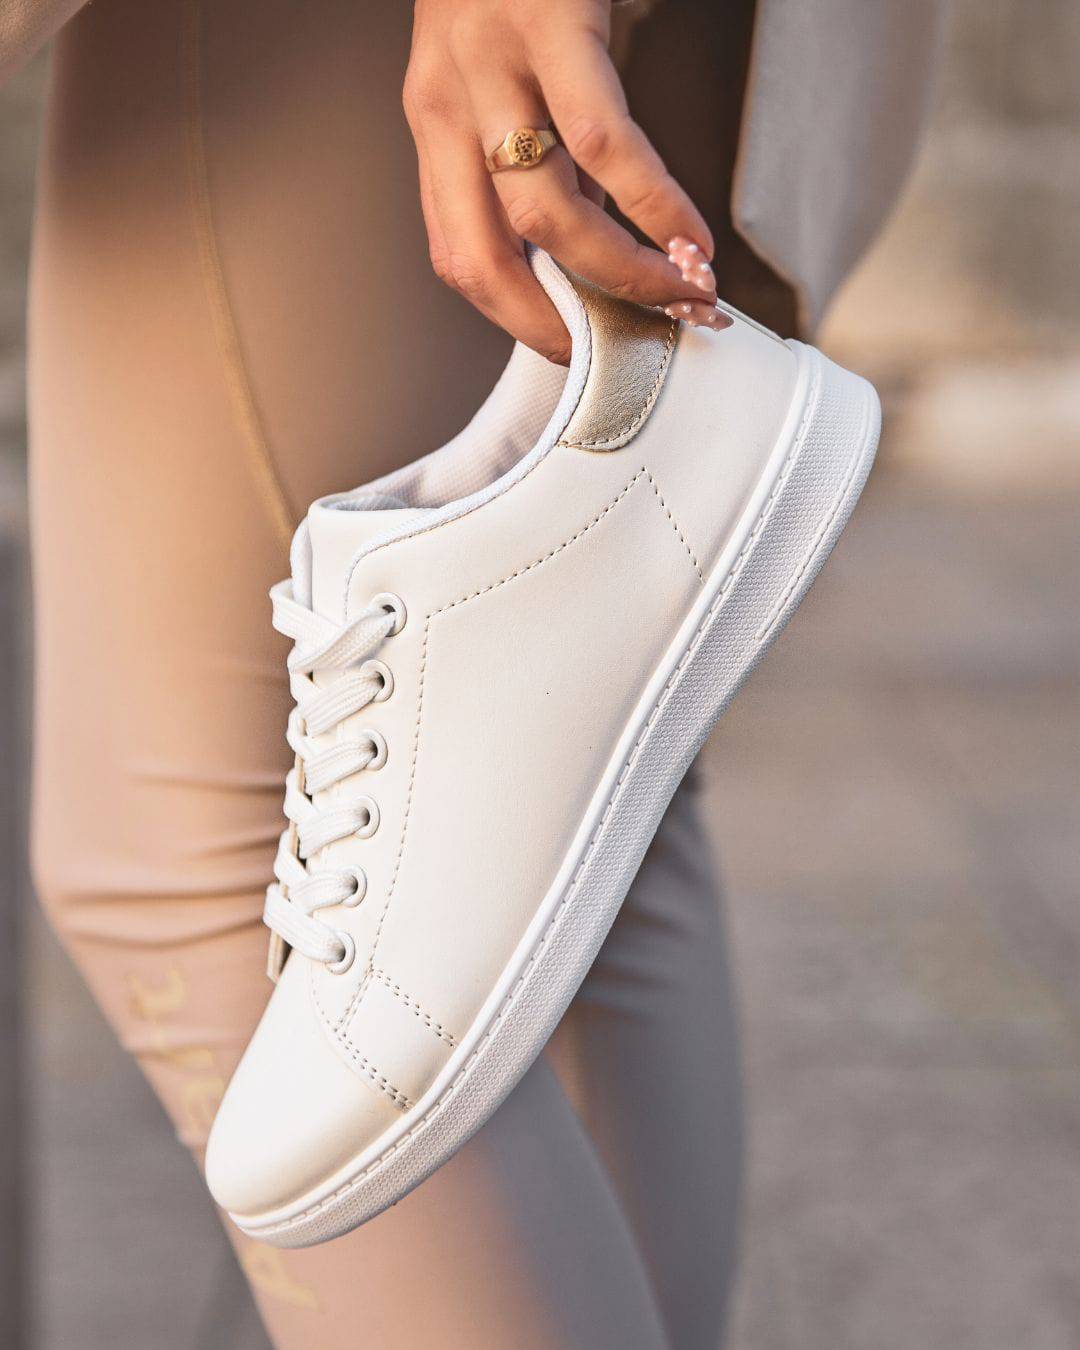 Damen-Sneaker in Weiß und Gold mit Schnürsenkeln - Jamie - Casualmode.de